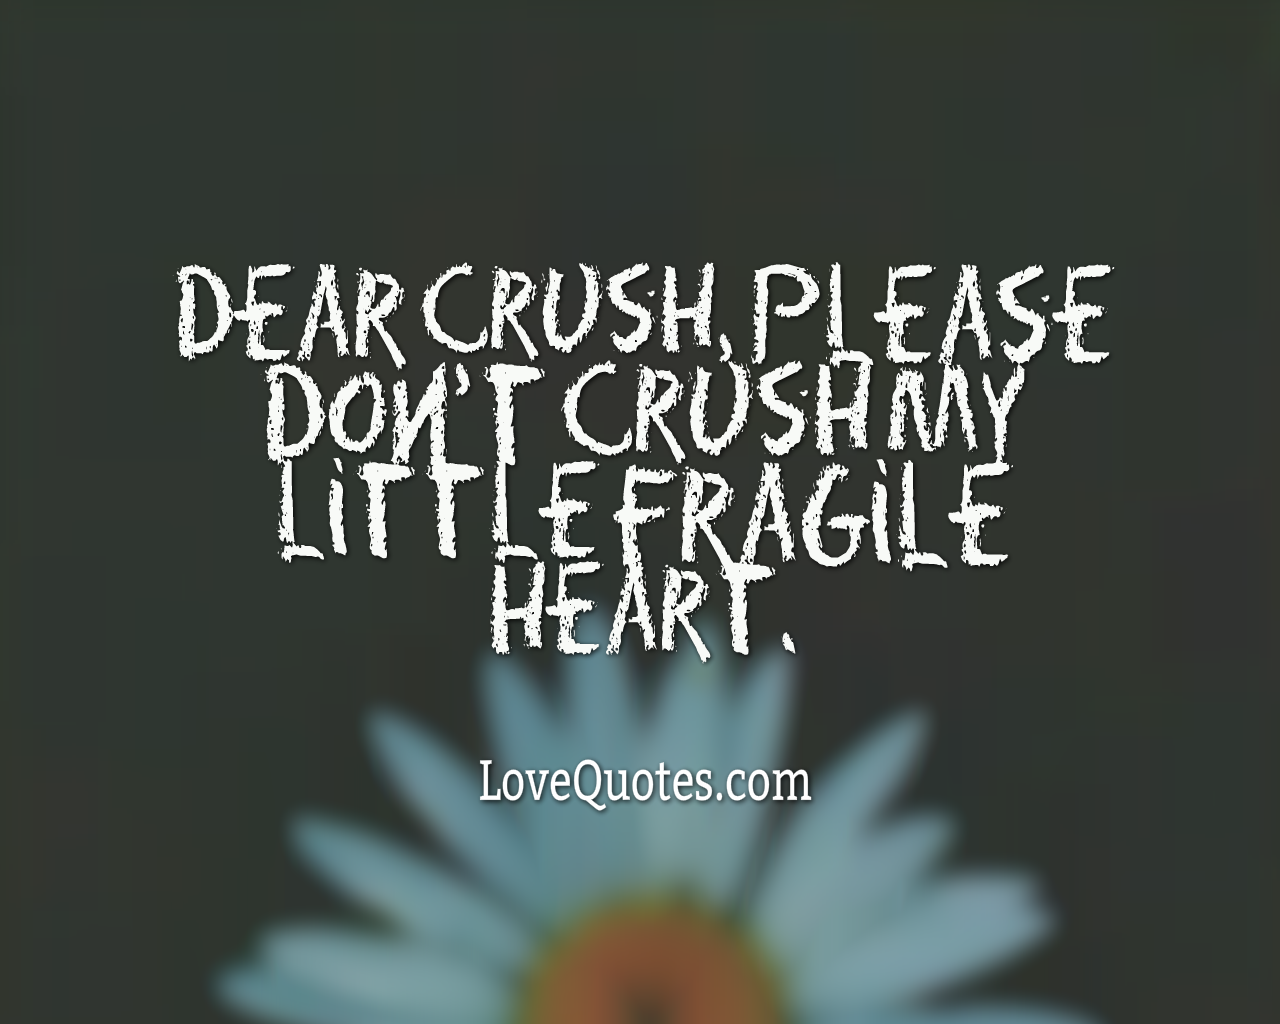 My Fragile Heart